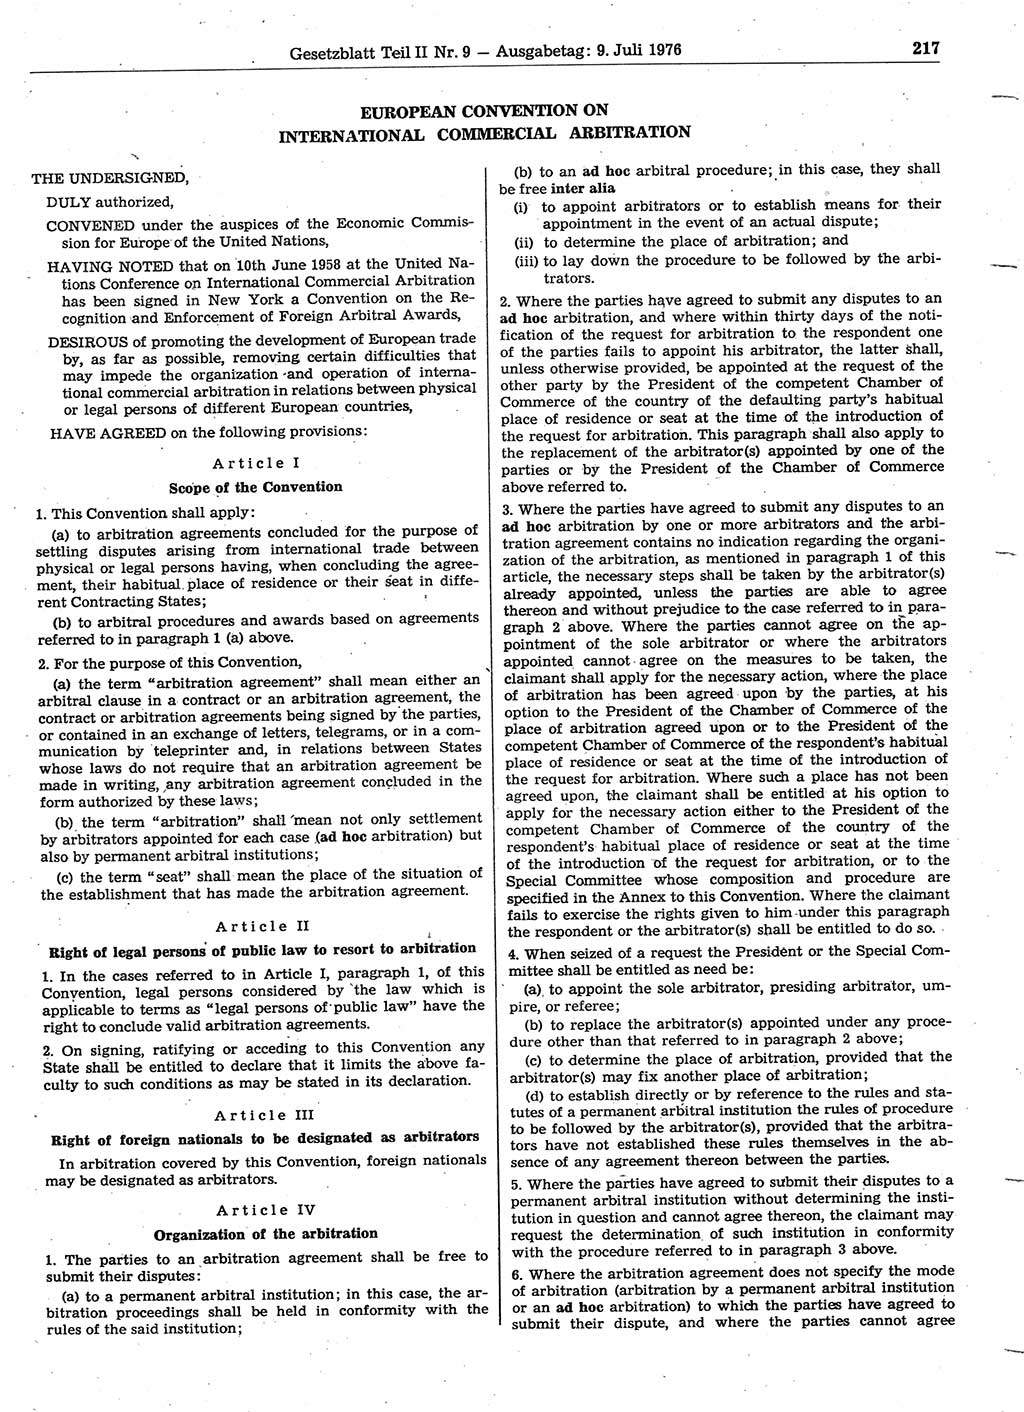 Gesetzblatt (GBl.) der Deutschen Demokratischen Republik (DDR) Teil ⅠⅠ 1976, Seite 217 (GBl. DDR ⅠⅠ 1976, S. 217)